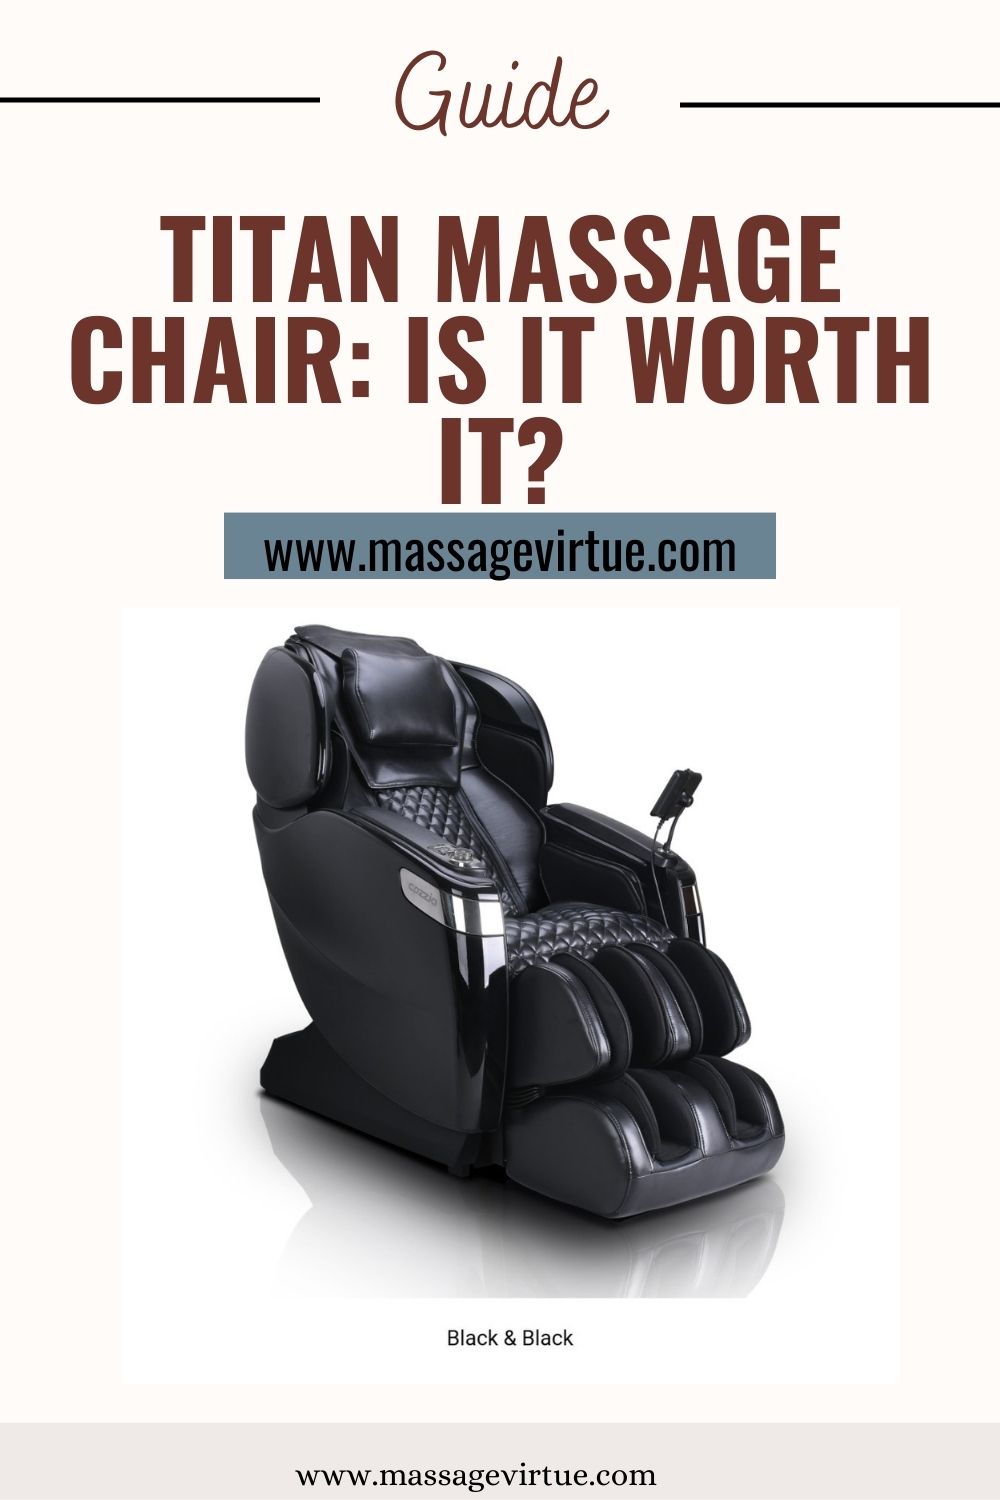 Titan Massage Chair: Is it Worth it?